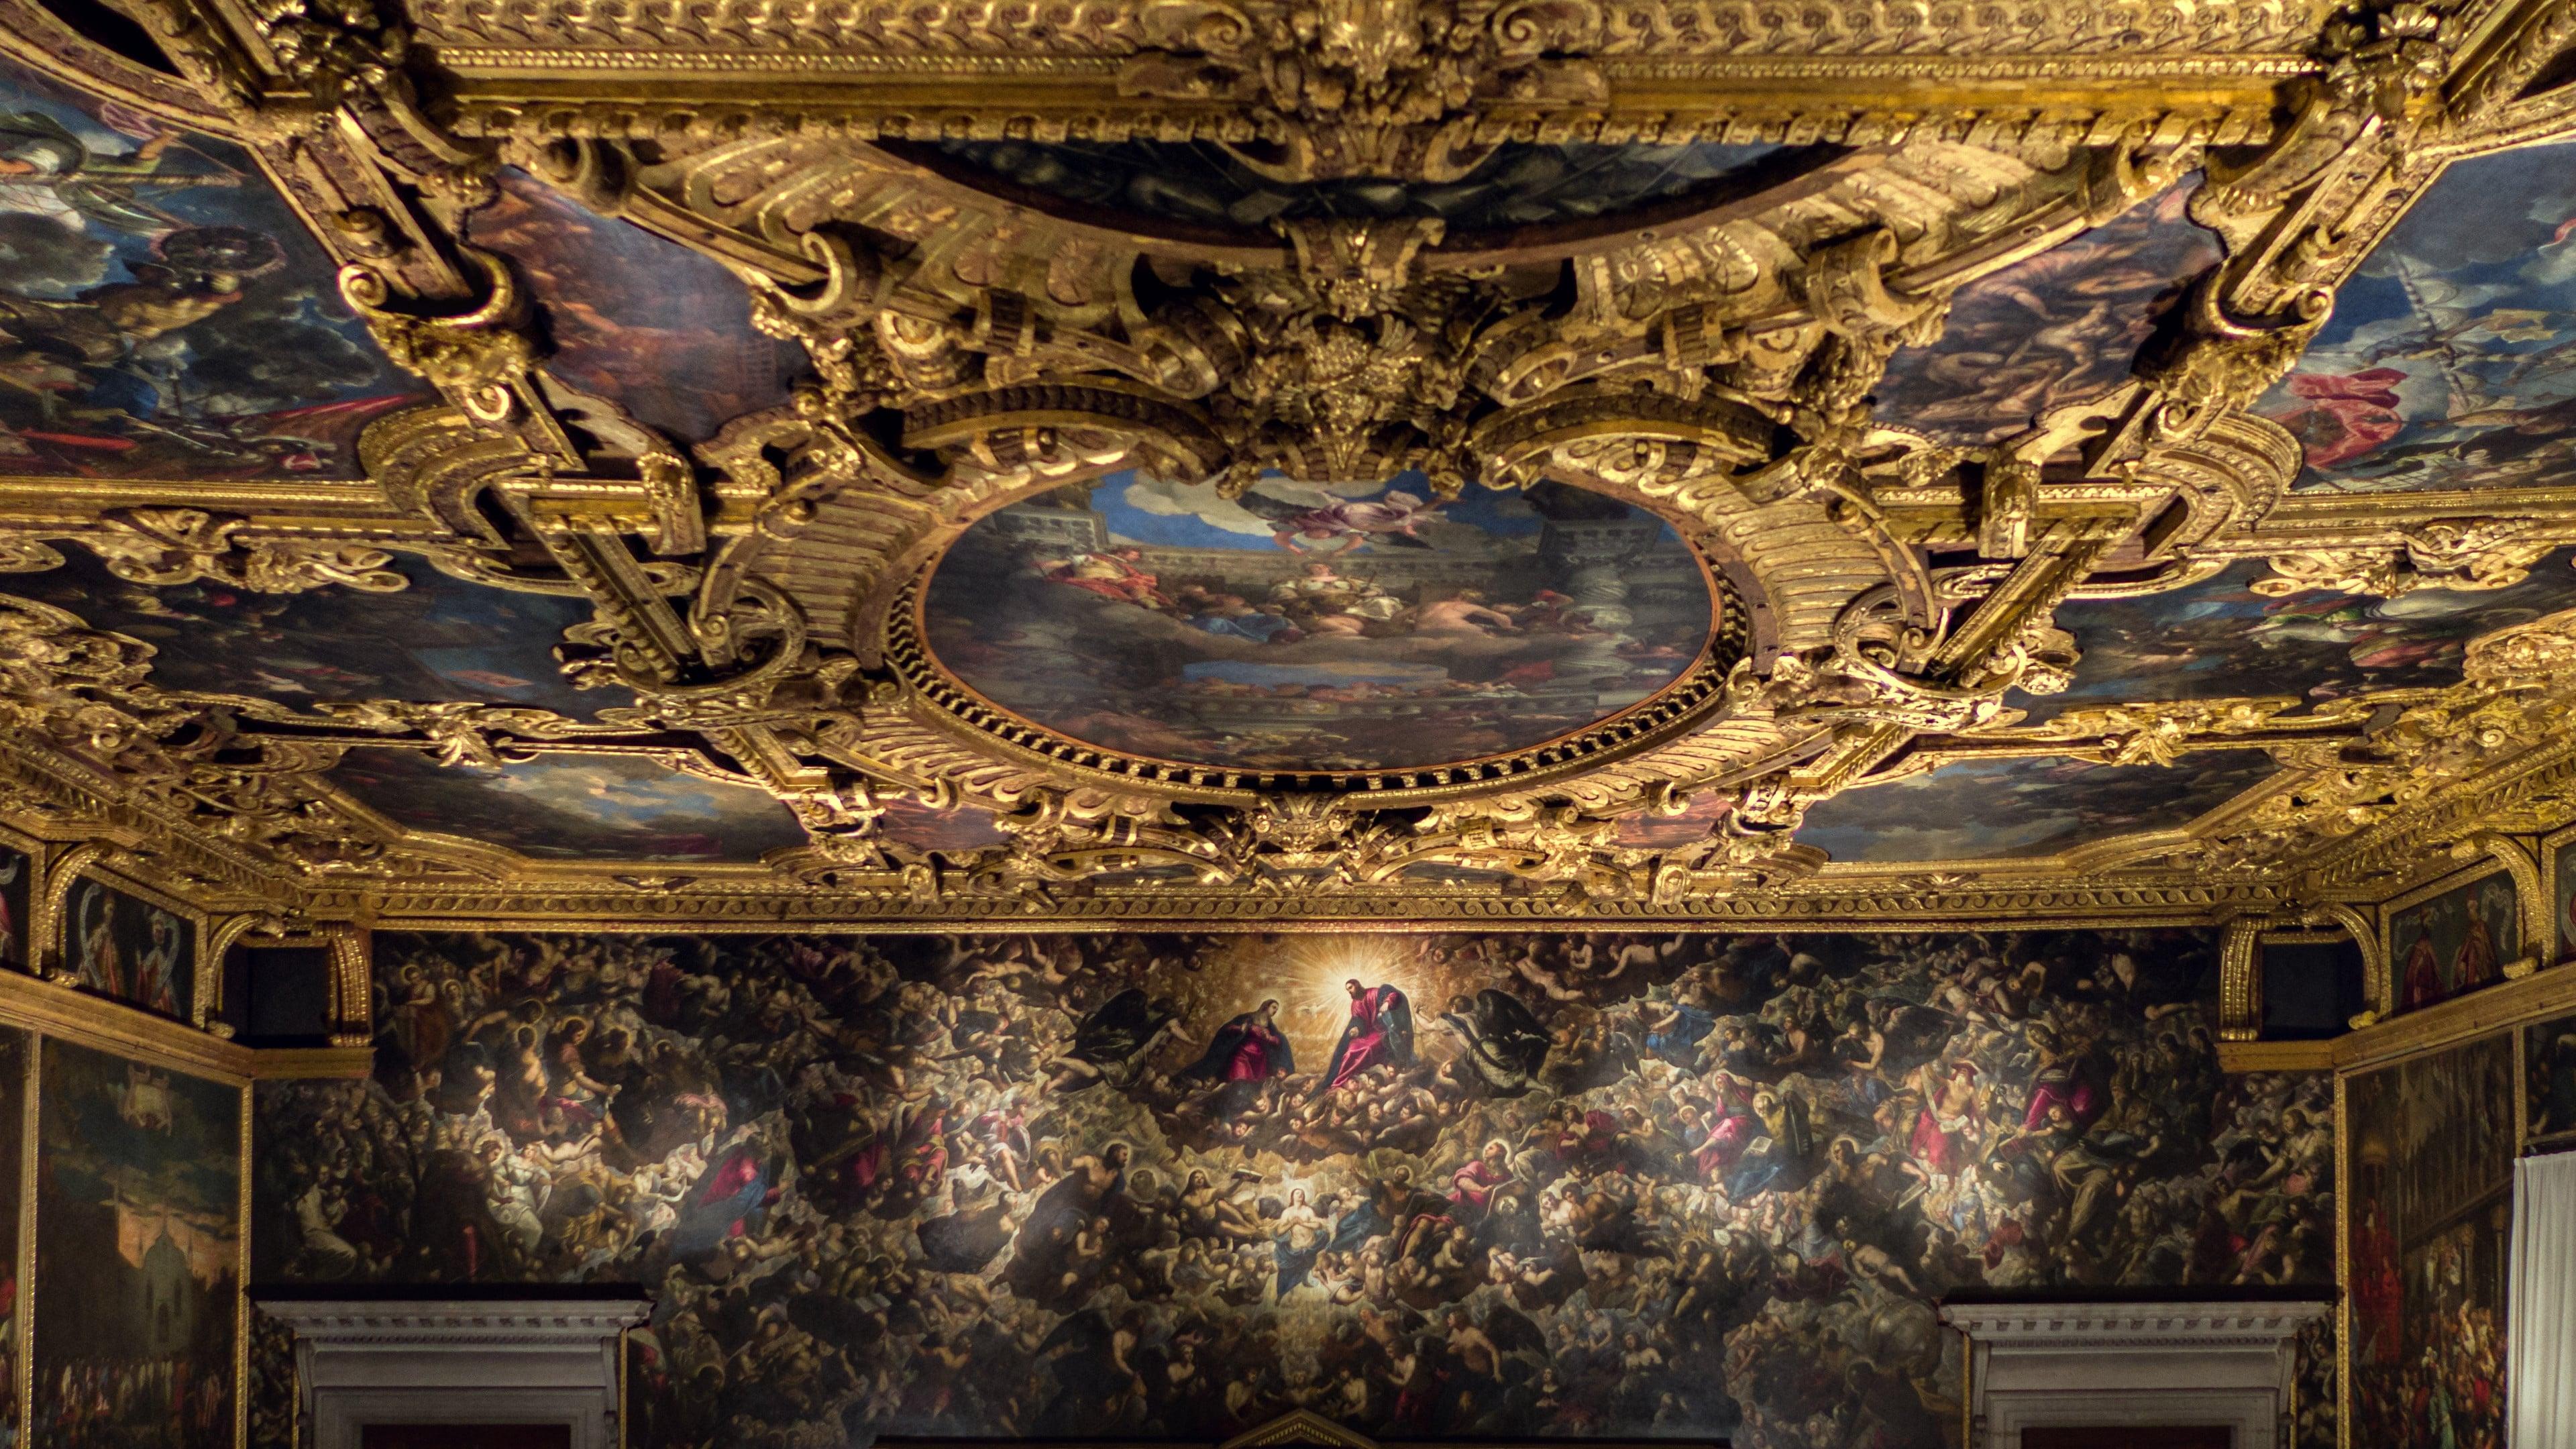 Tintoretto: A Rebel in Venice backdrop